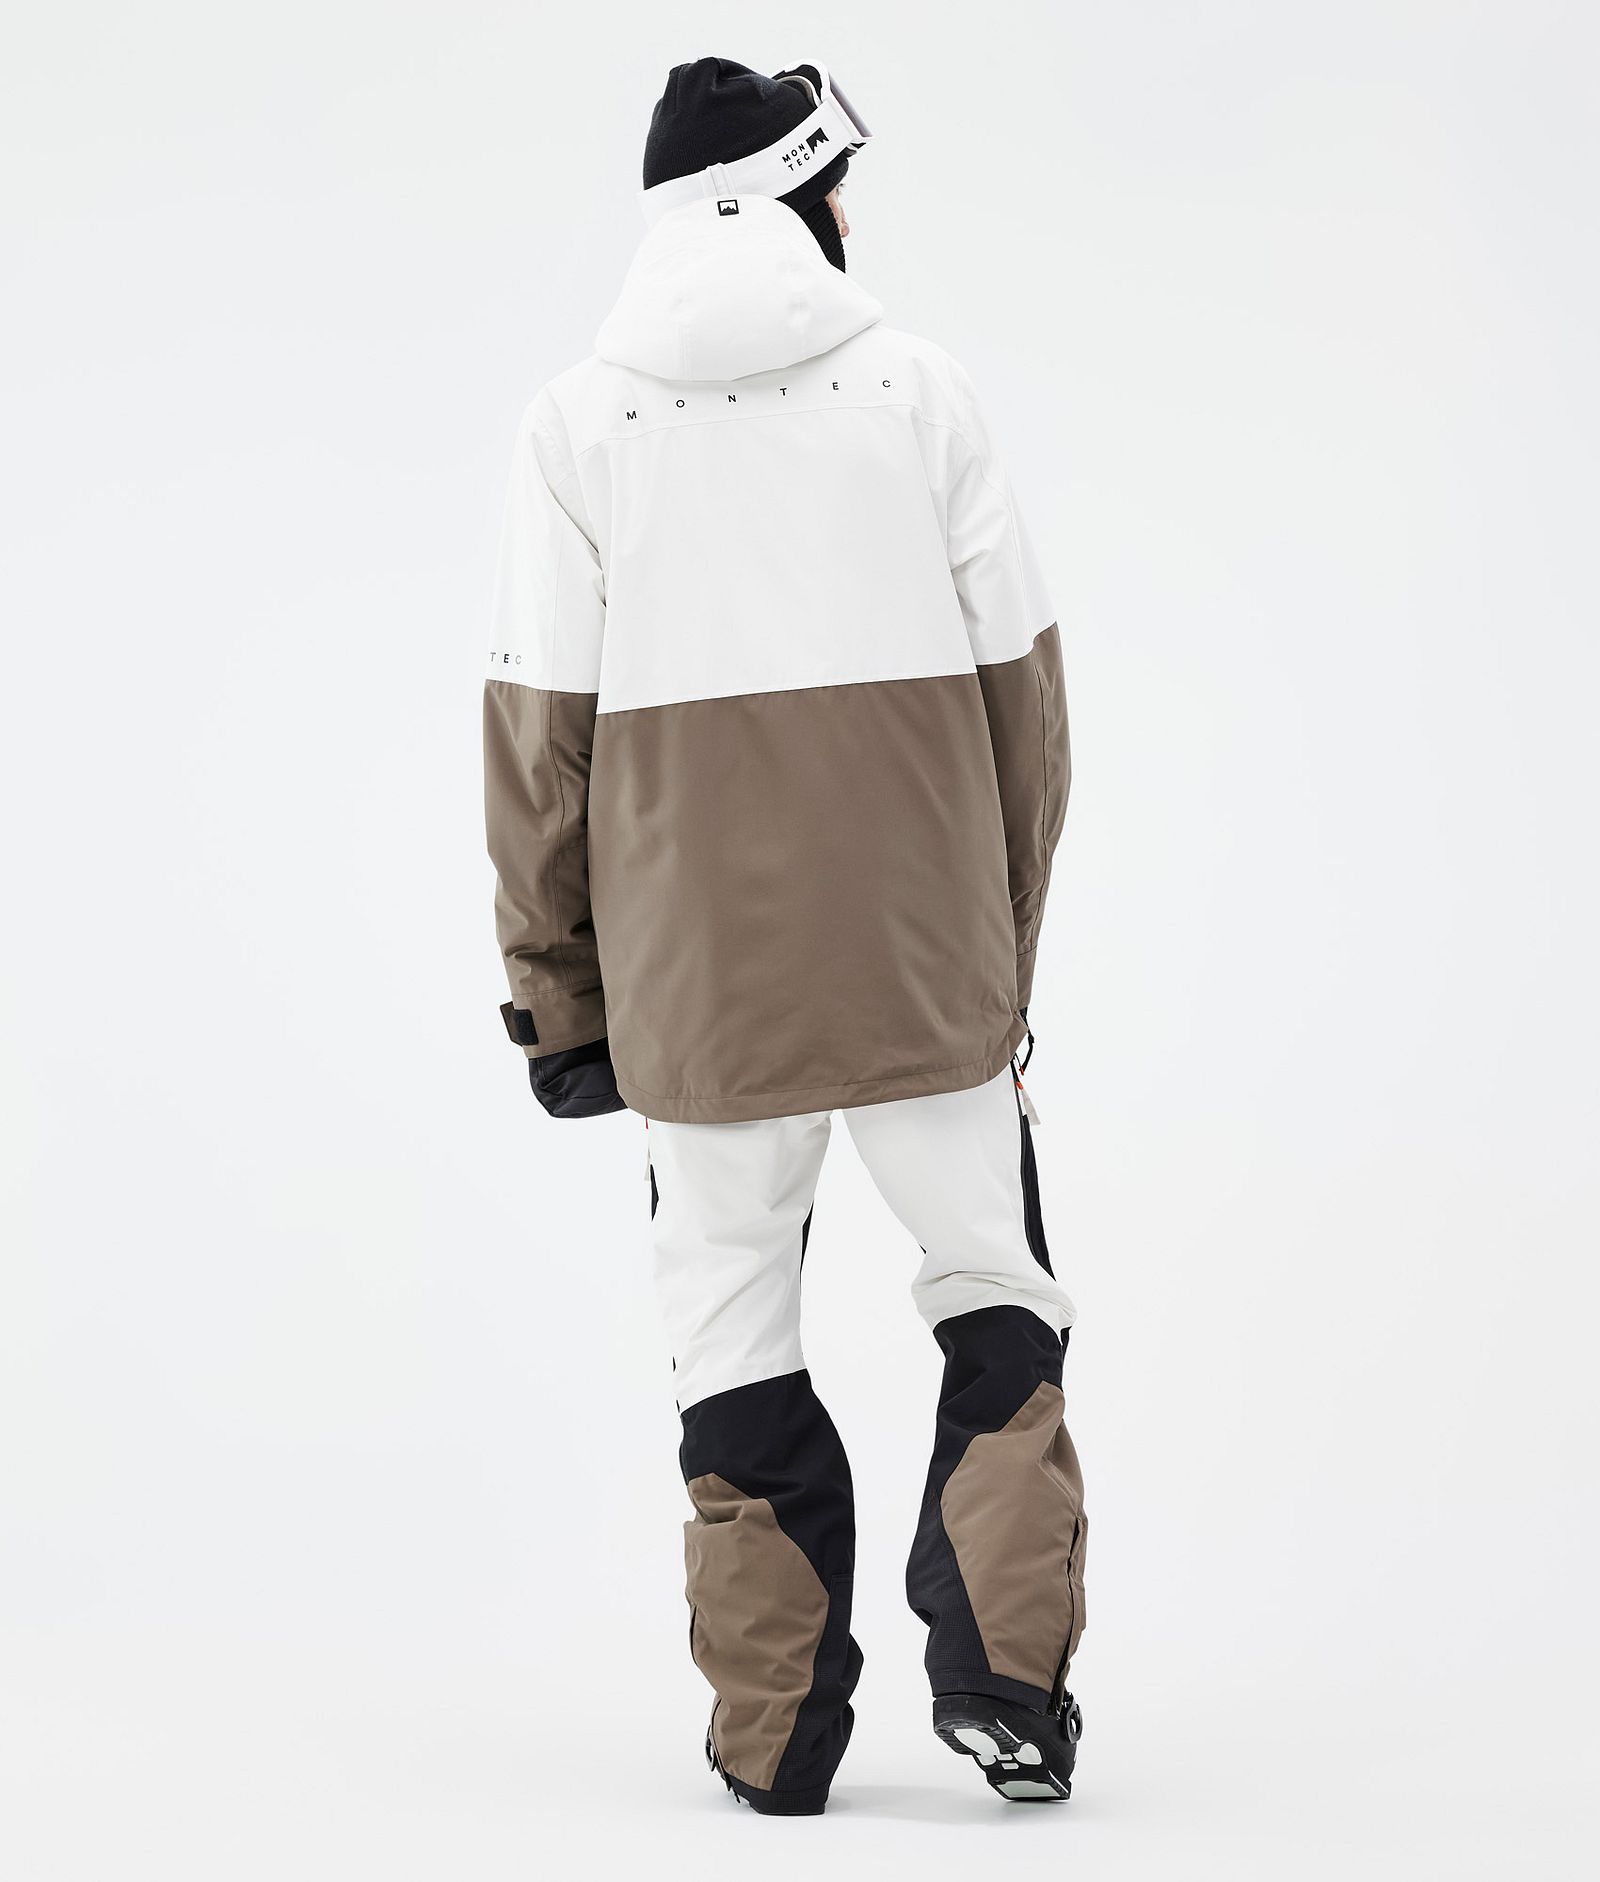 Dune Ski Jacket Men Old White/Black/Walnut, Image 5 of 9